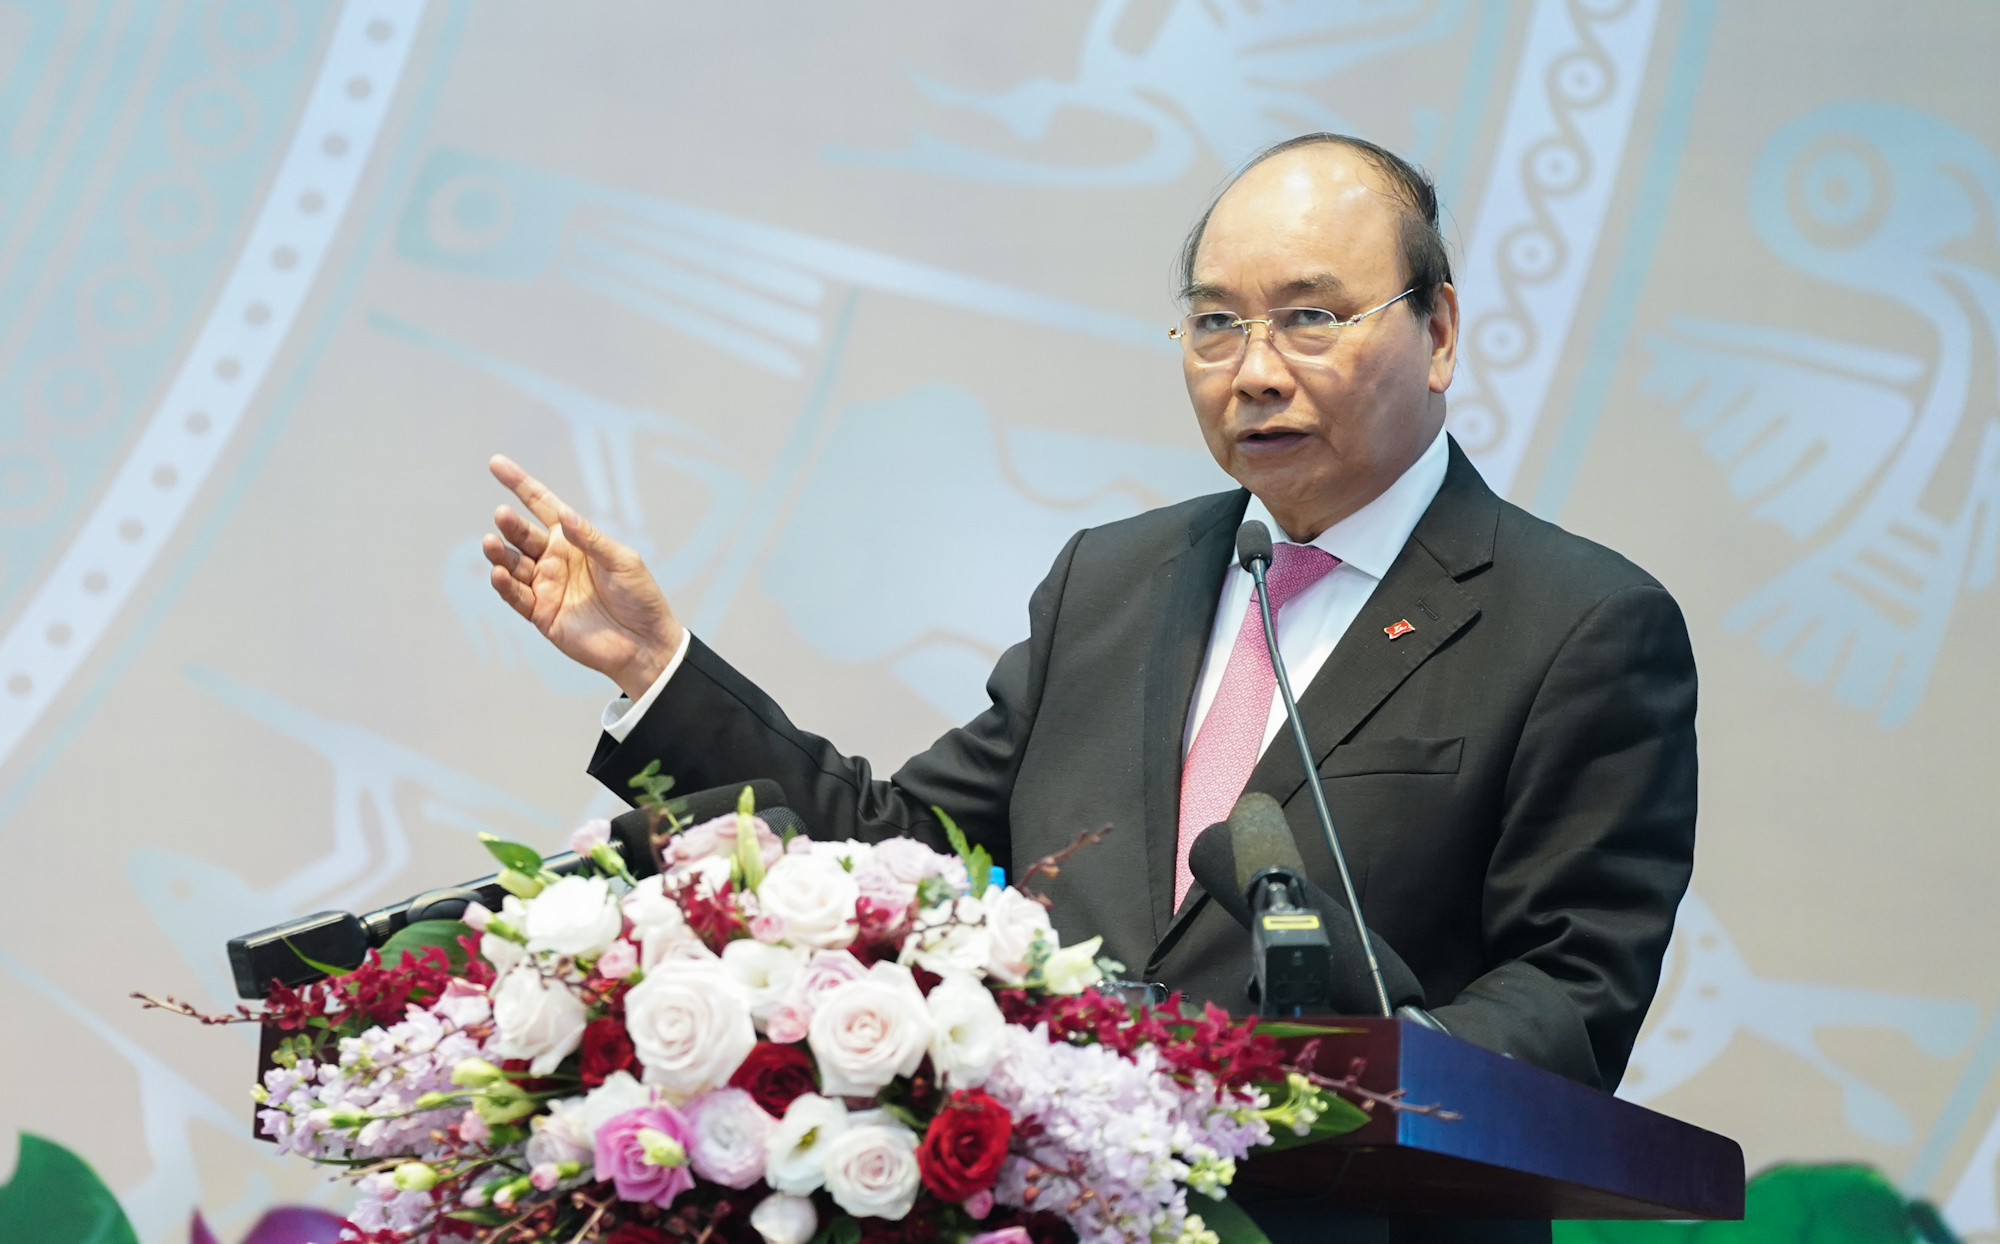 Thủ tướng Nguyễn Xuân Phúc: Tất cả người lao động và những người phụ thuộc cần có lưới an sinh